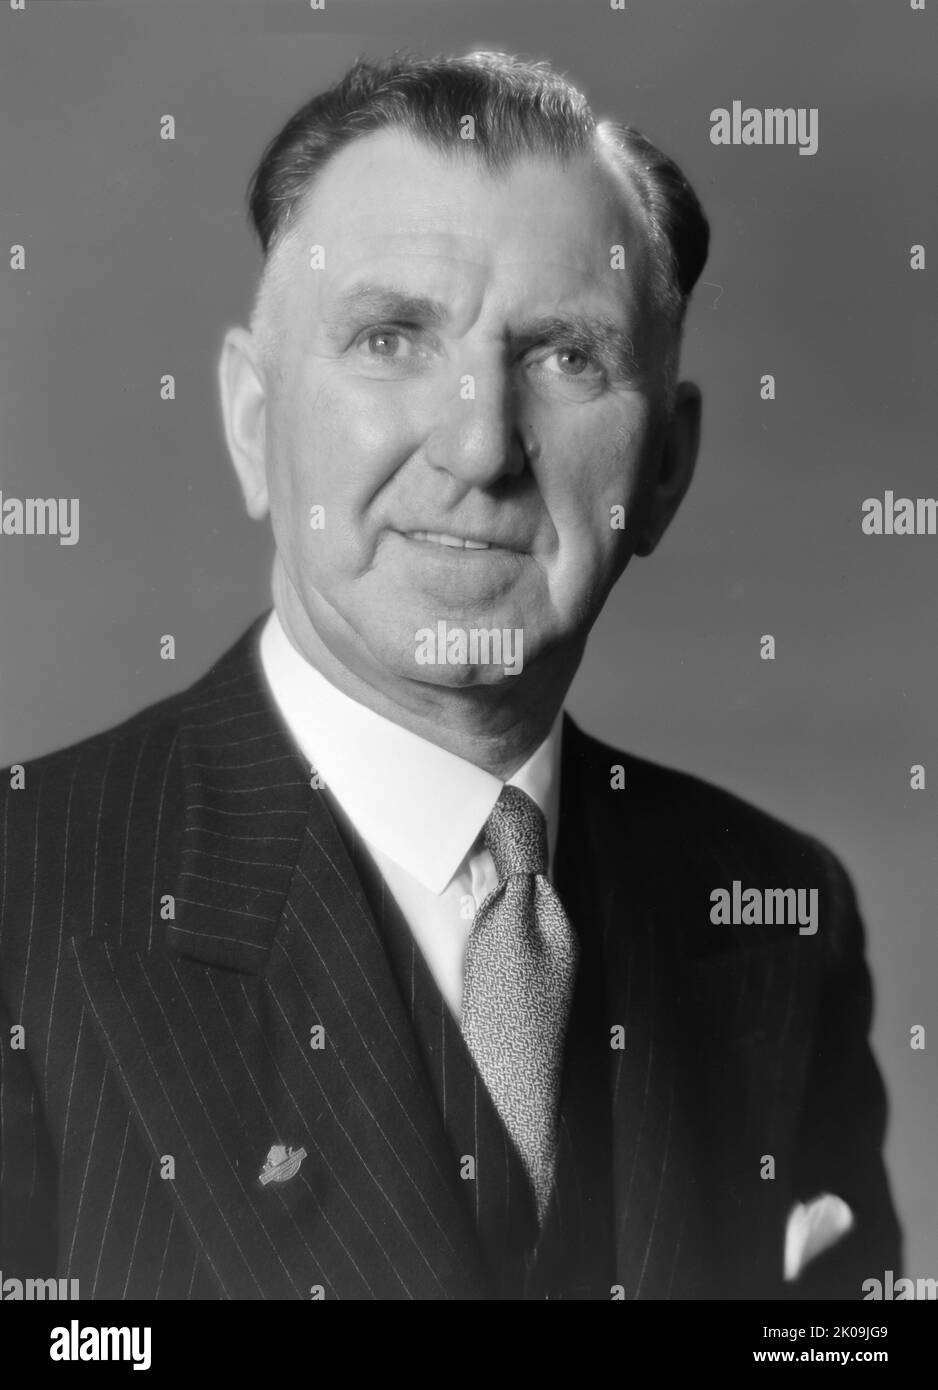 Sir Sidney Holland (1893 - 1961), neuseeländischer Politiker, der vom 13. Dezember 1949 bis zum 20. September 1957 als Premierminister von Neuseeland 25. diente. Er war maßgeblich an der Gründung und Konsolidierung der neuseeländischen Nationalpartei beteiligt, die die neuseeländische Politik für einen Großteil der zweiten Hälfte des 20.. Jahrhunderts dominieren sollte. Stockfoto